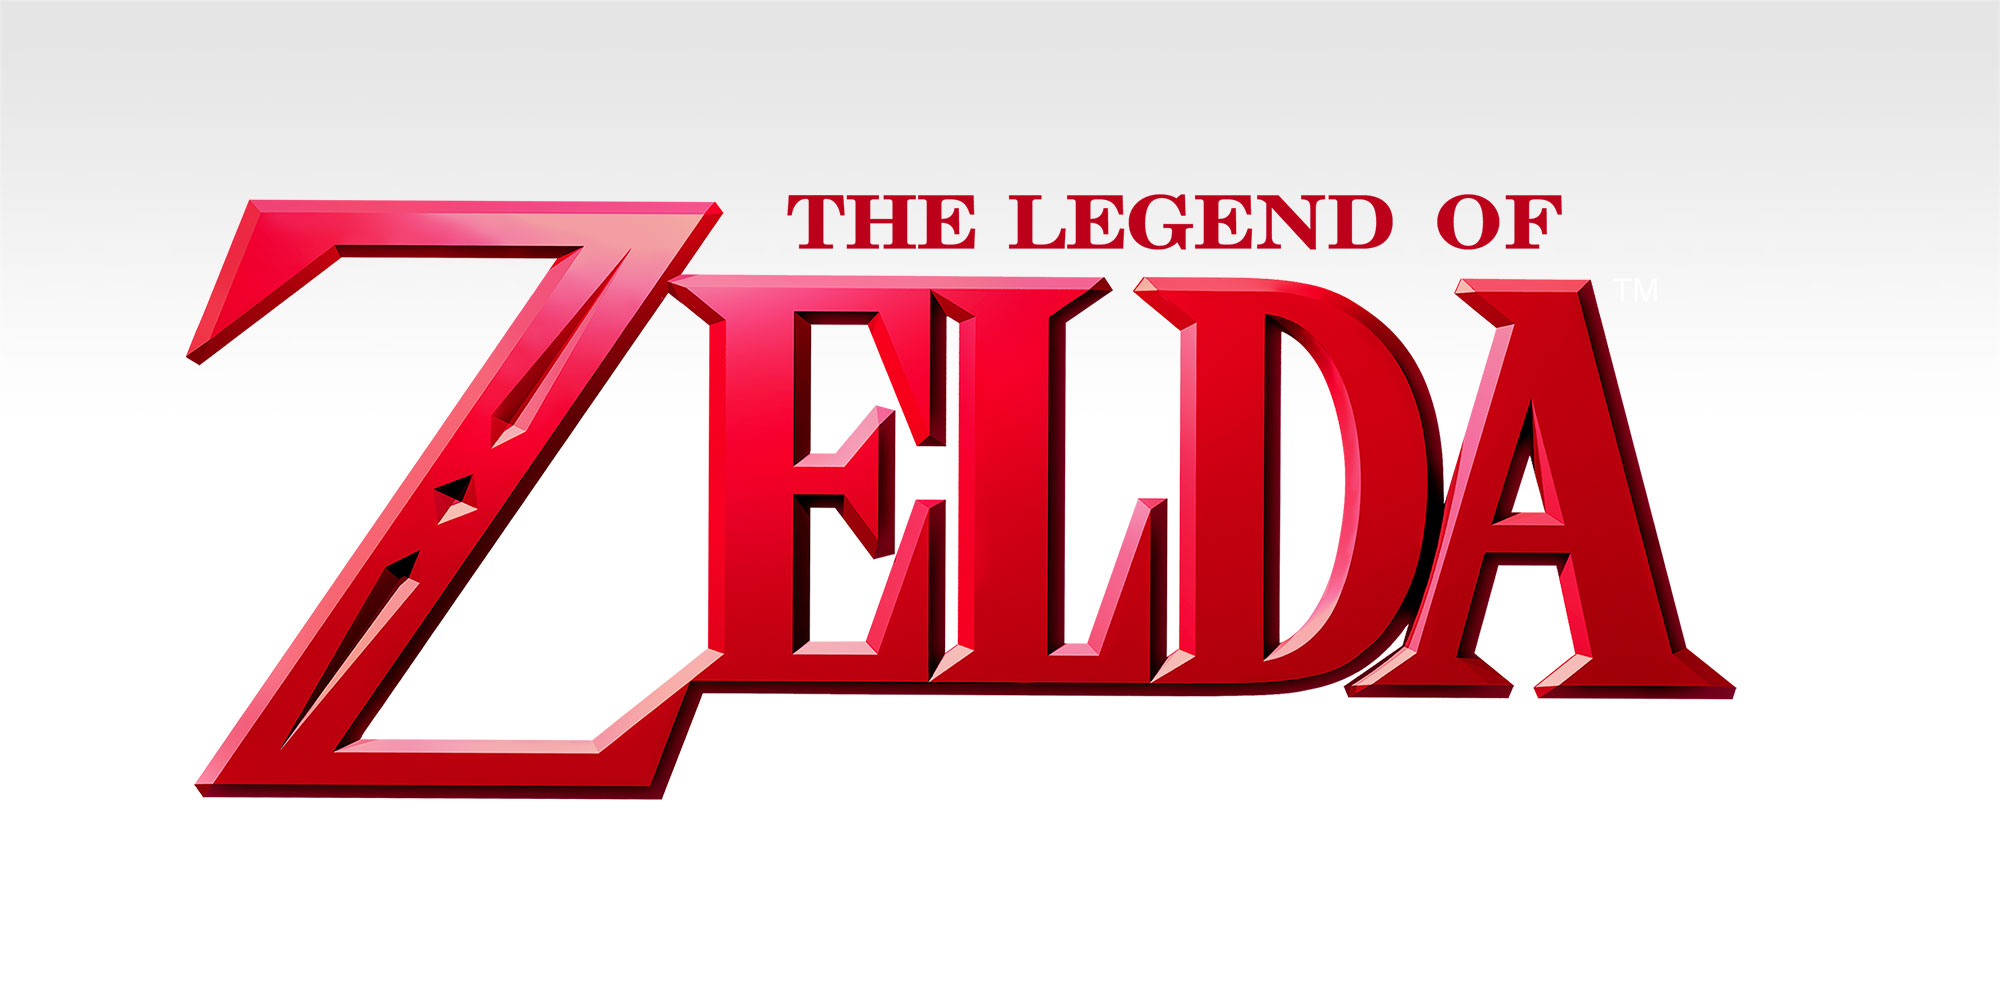 Découvrez les coulisses de The Legend of Zelda à travers des documents graphiques exclusifs